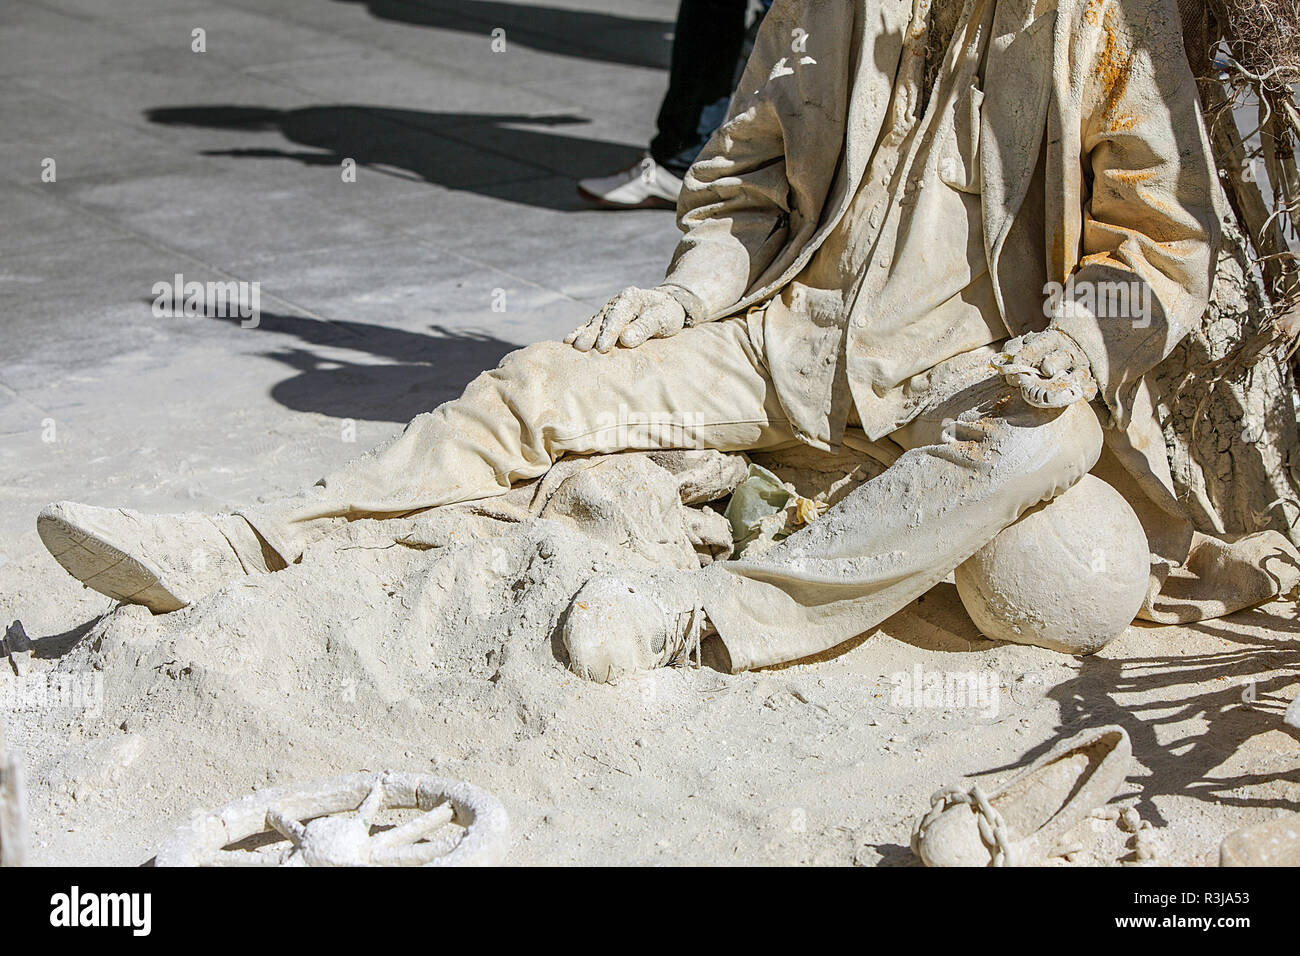 Ungewöhnliche Bild des Sandman, hier auf dem Marienplatz, München, Deutschland gesehen. Stockfoto